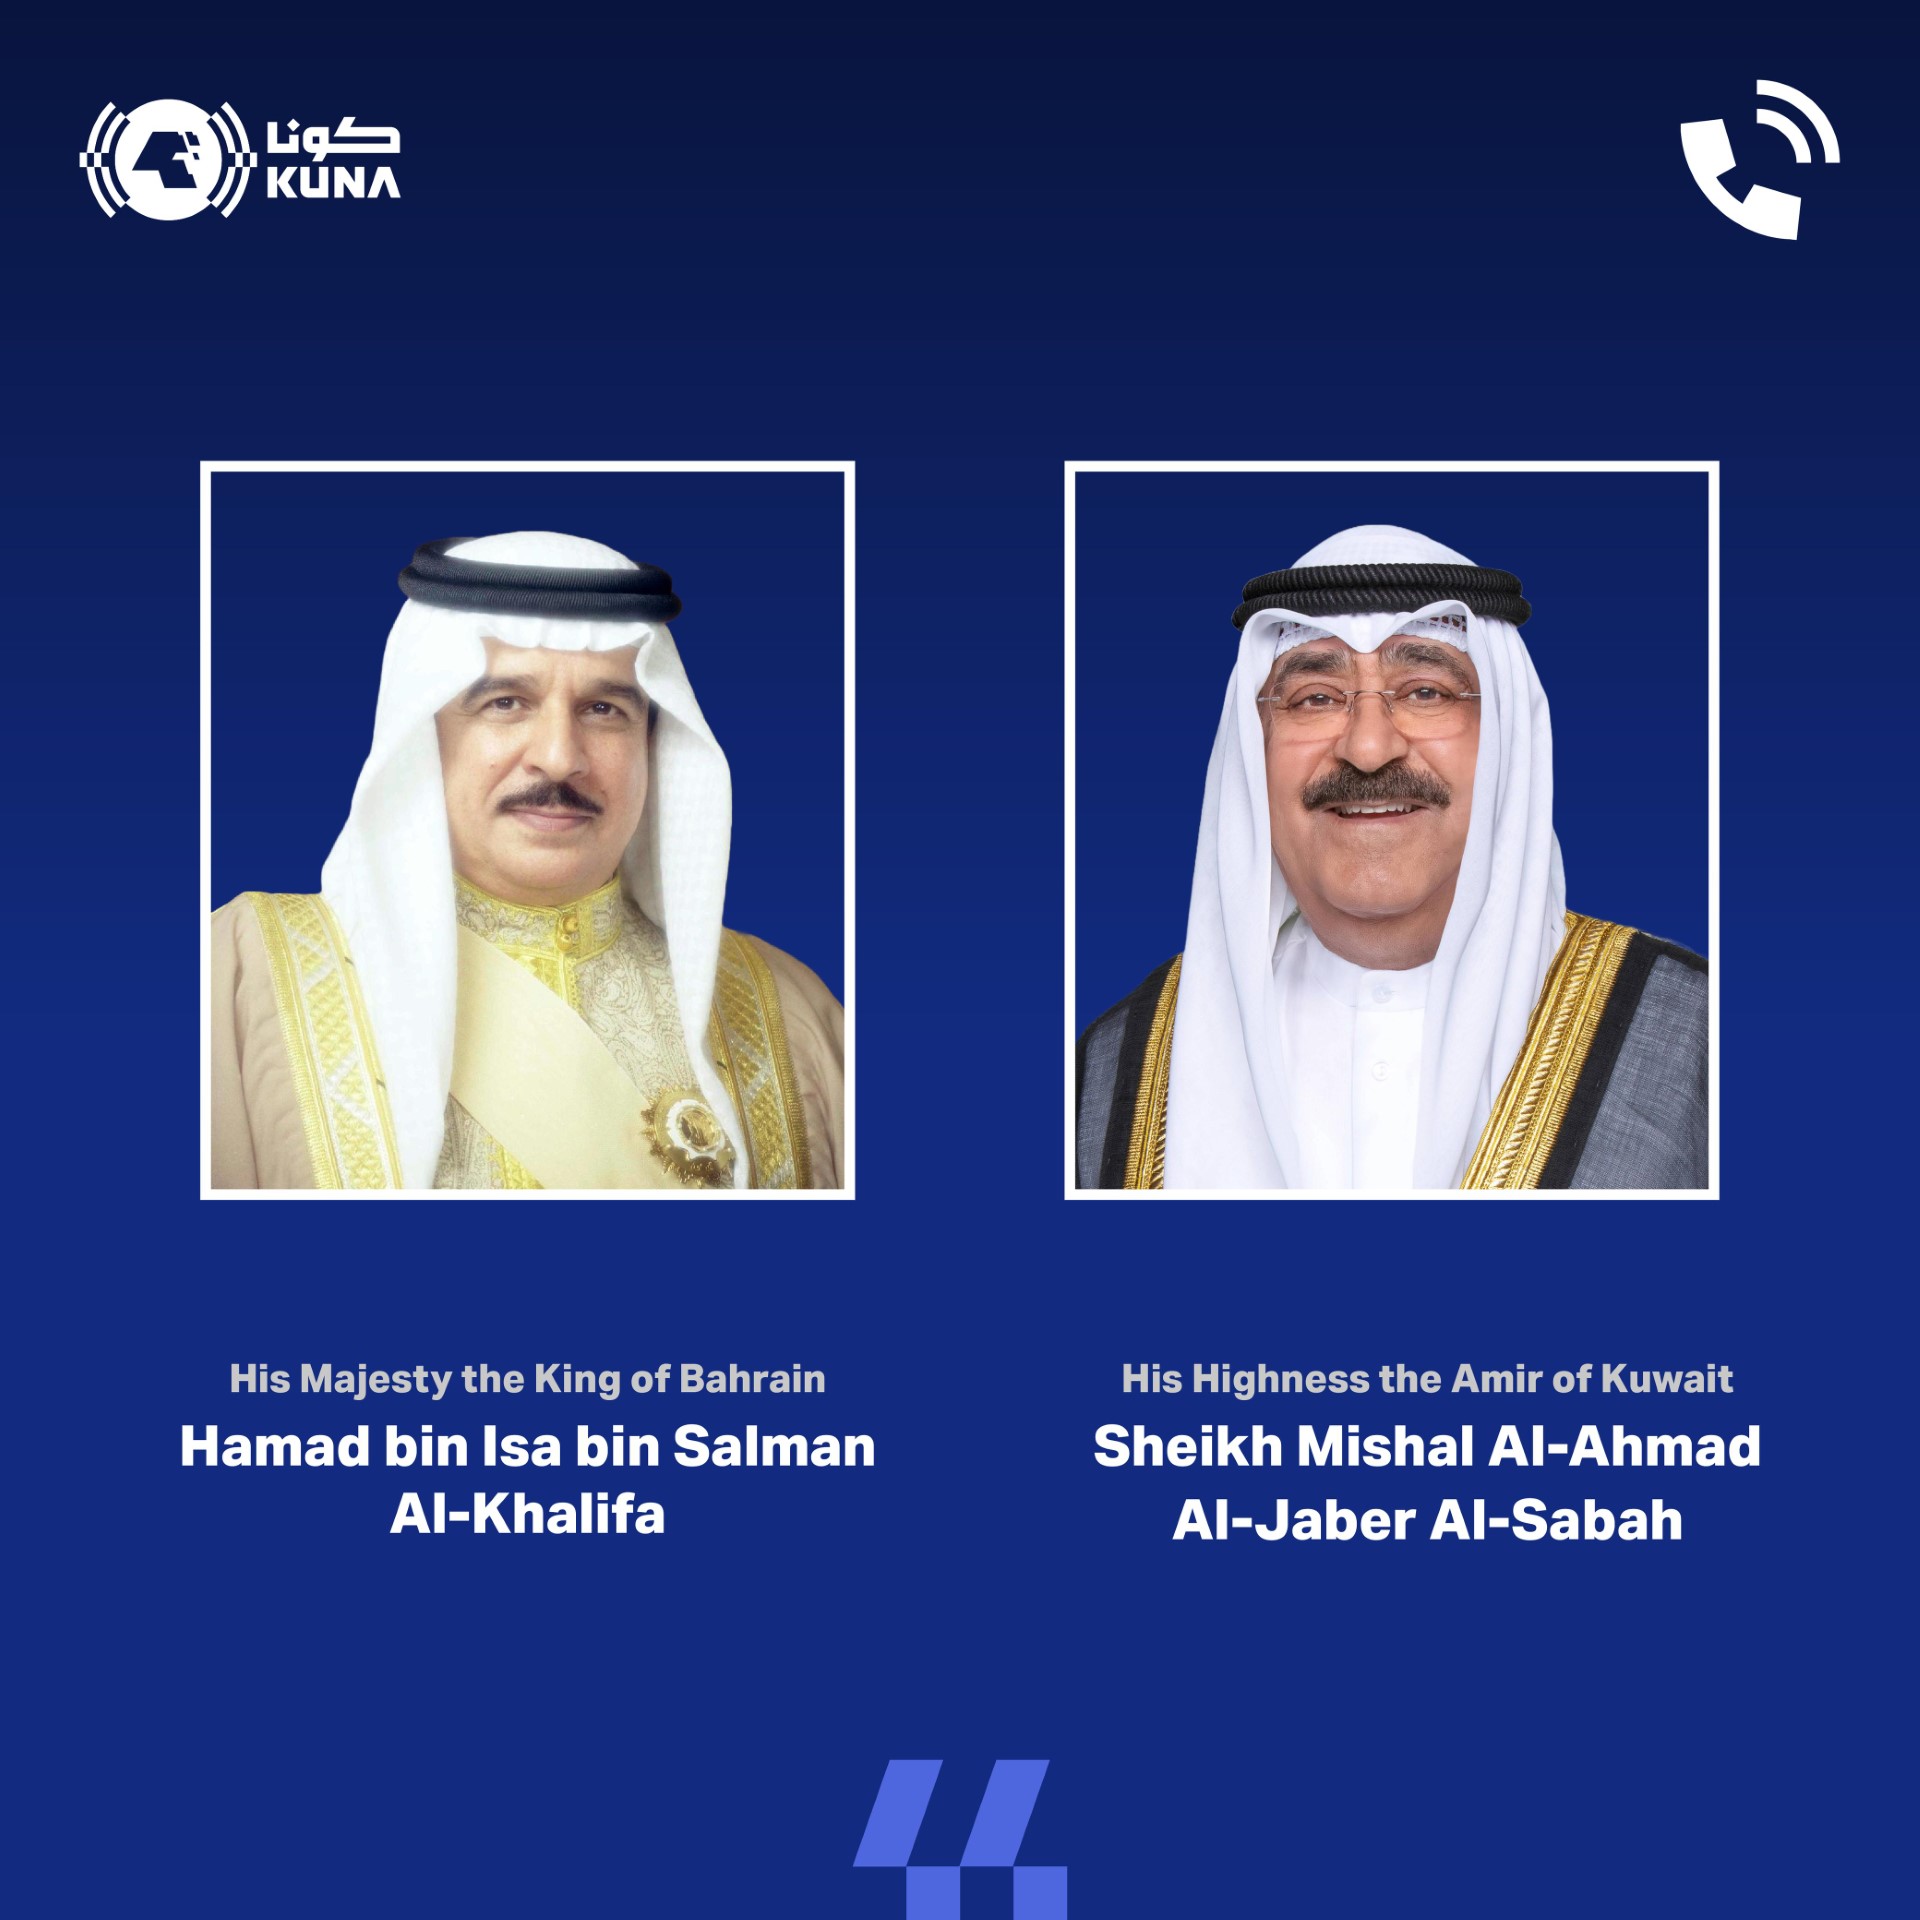 Kuwait Amir receives phone call from Bahrain's King on Eid Al-Fitr                                                                                                                                                                                        